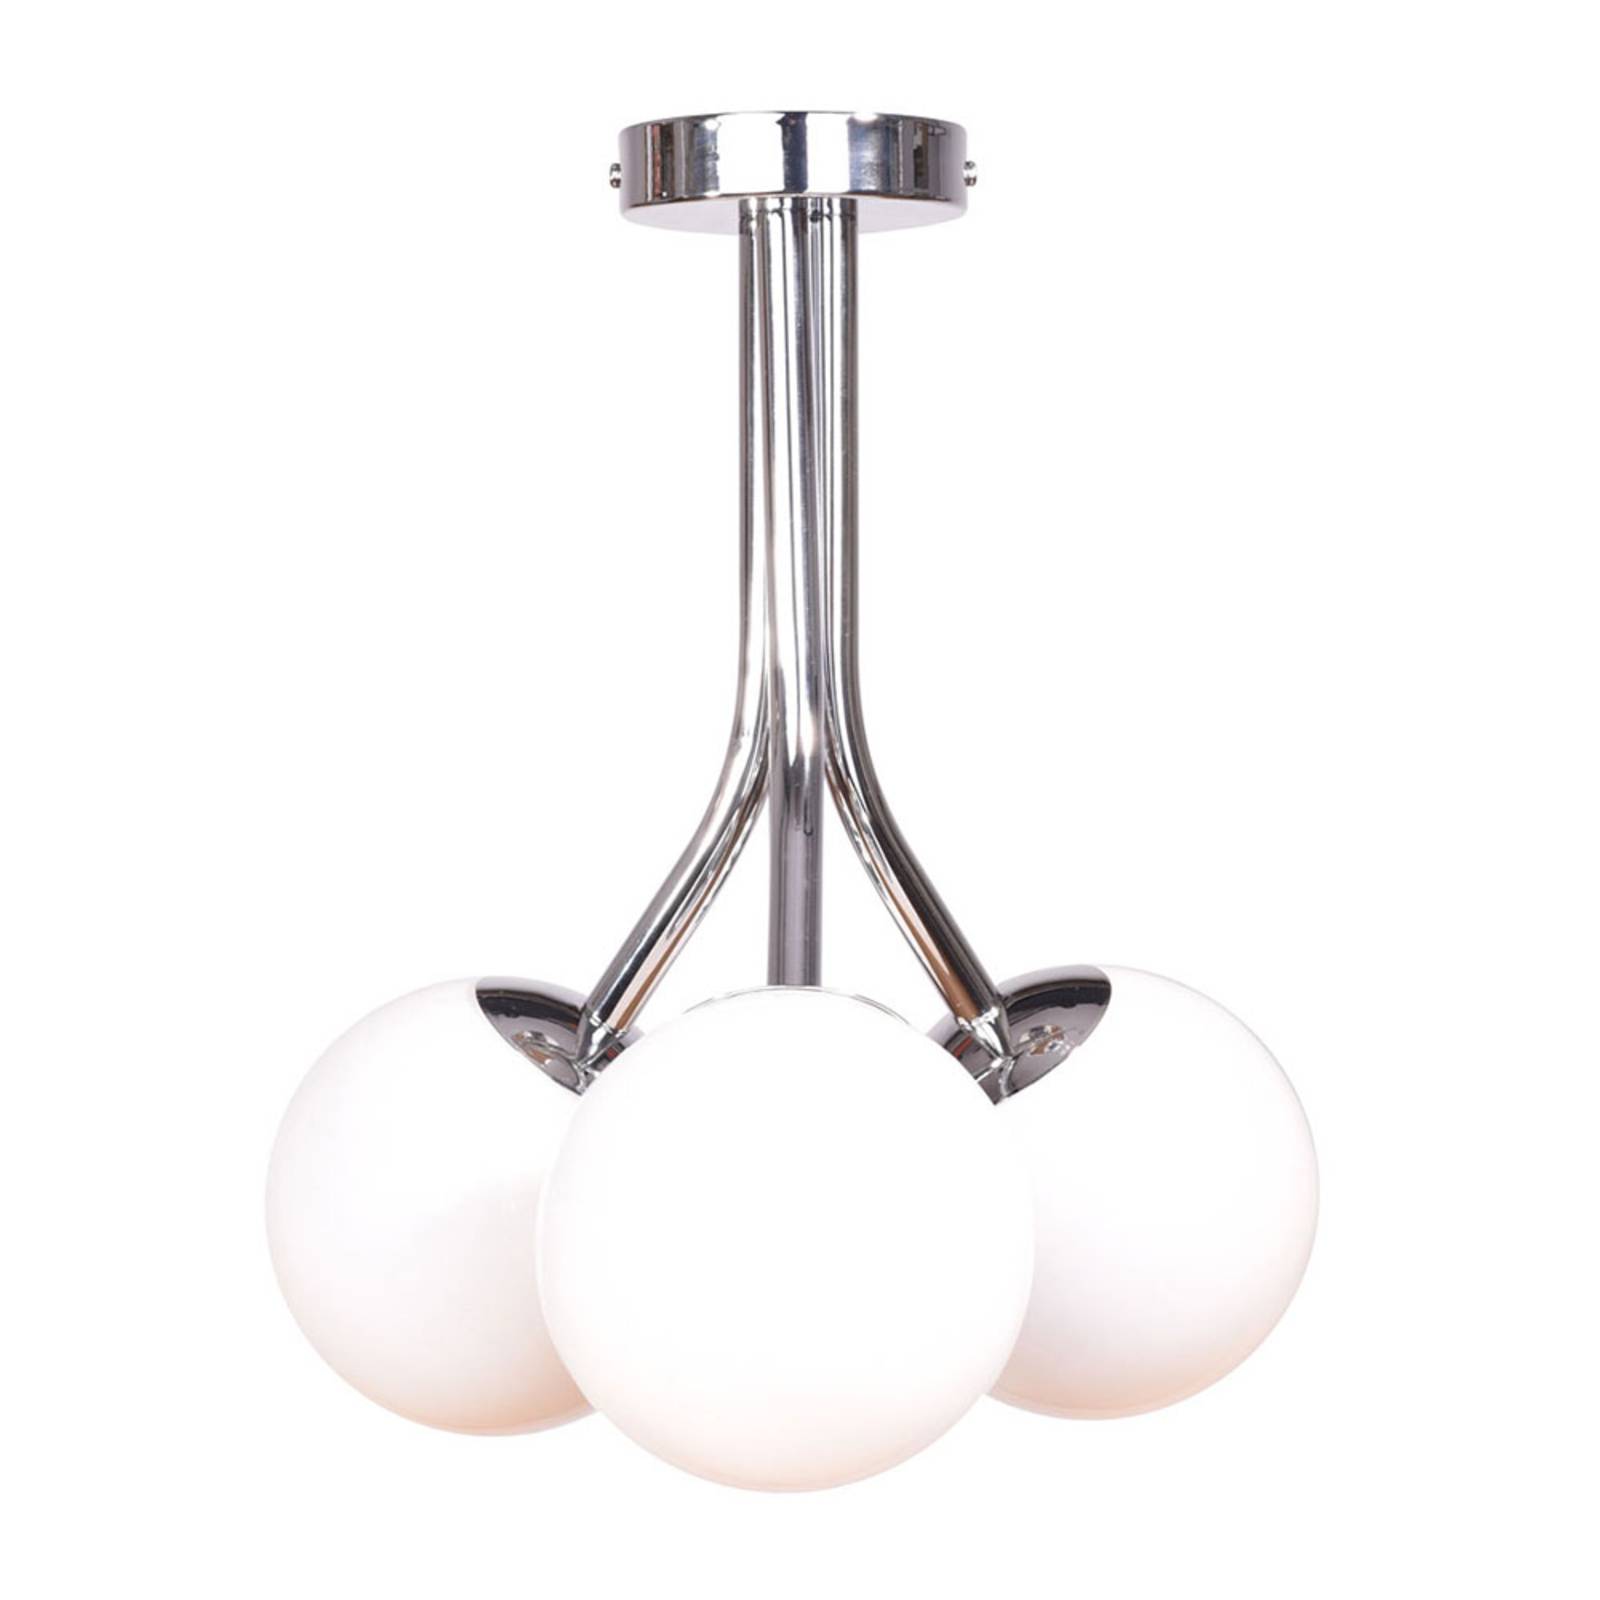 Plafondlamp Selva met drie glasbollen, chroom